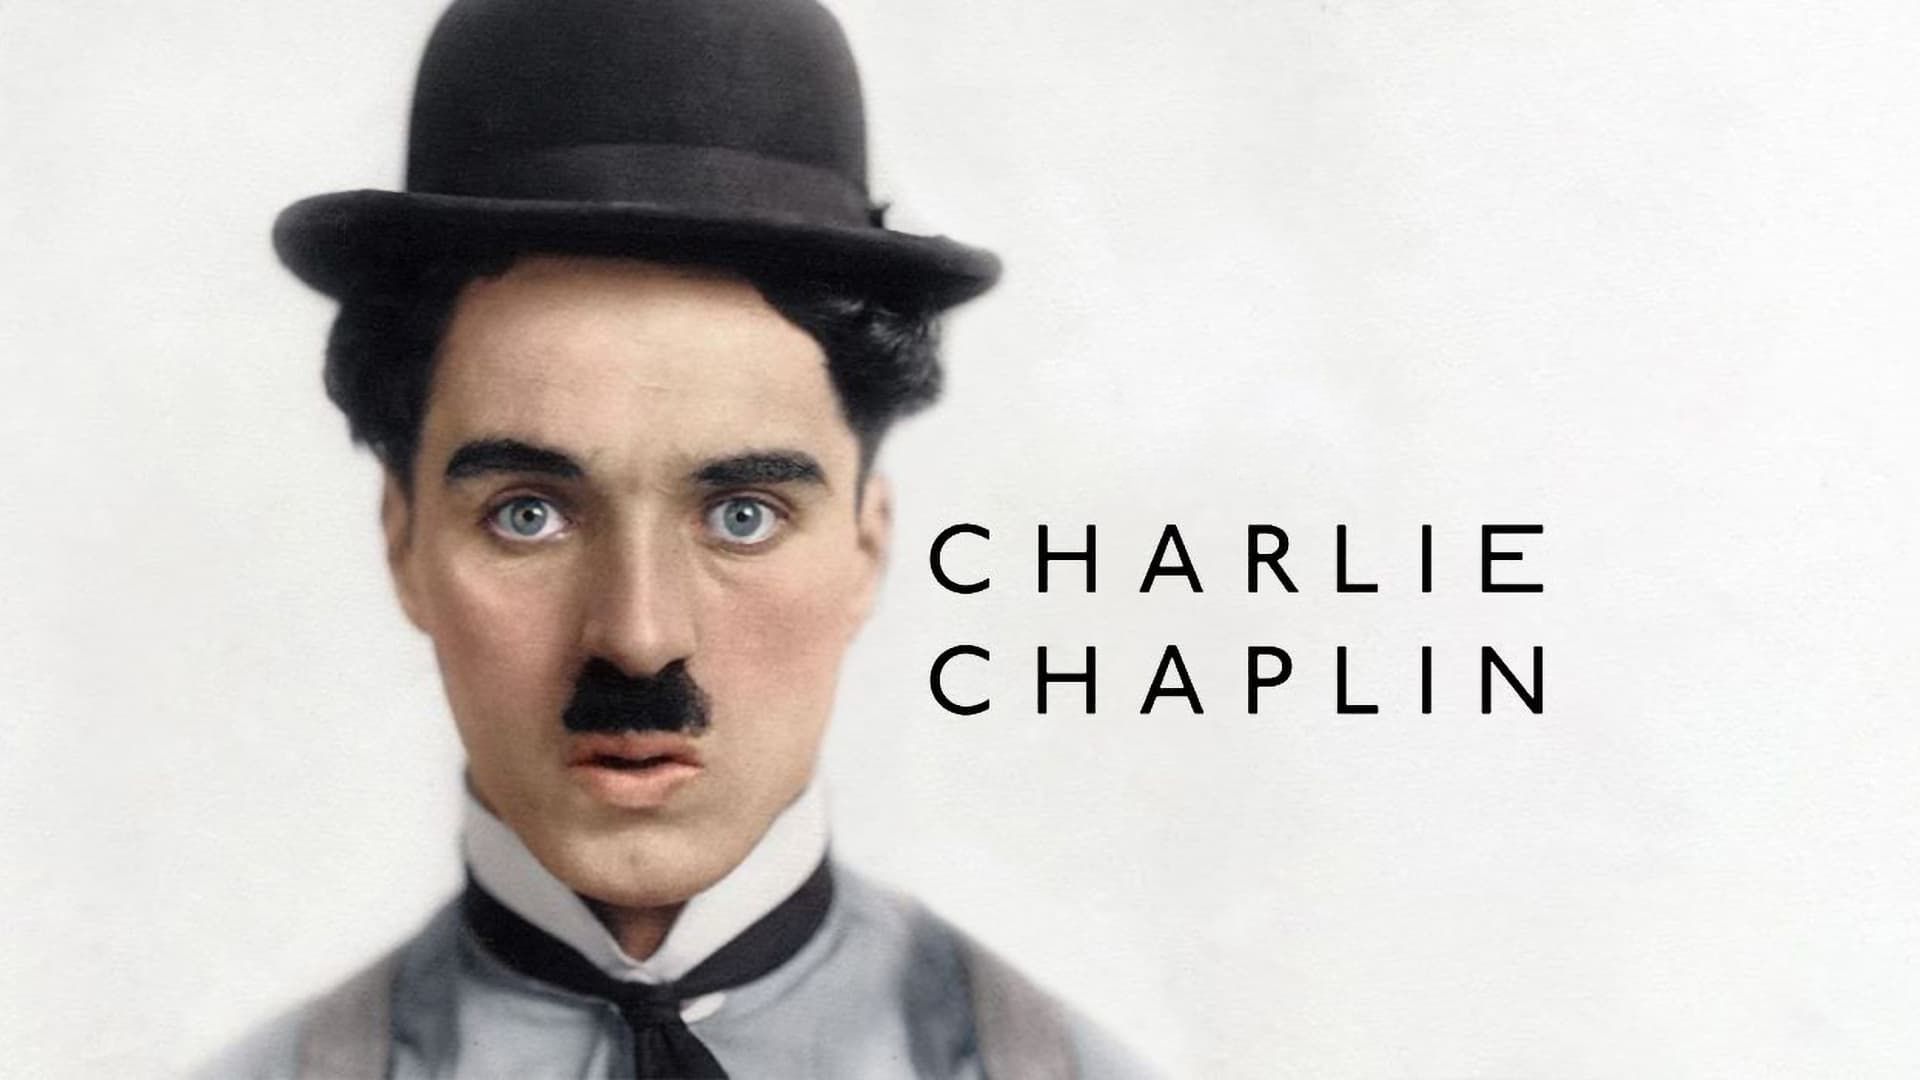 Charlie Chaplin in oyunu ilk kez Türkiye sahnesinde